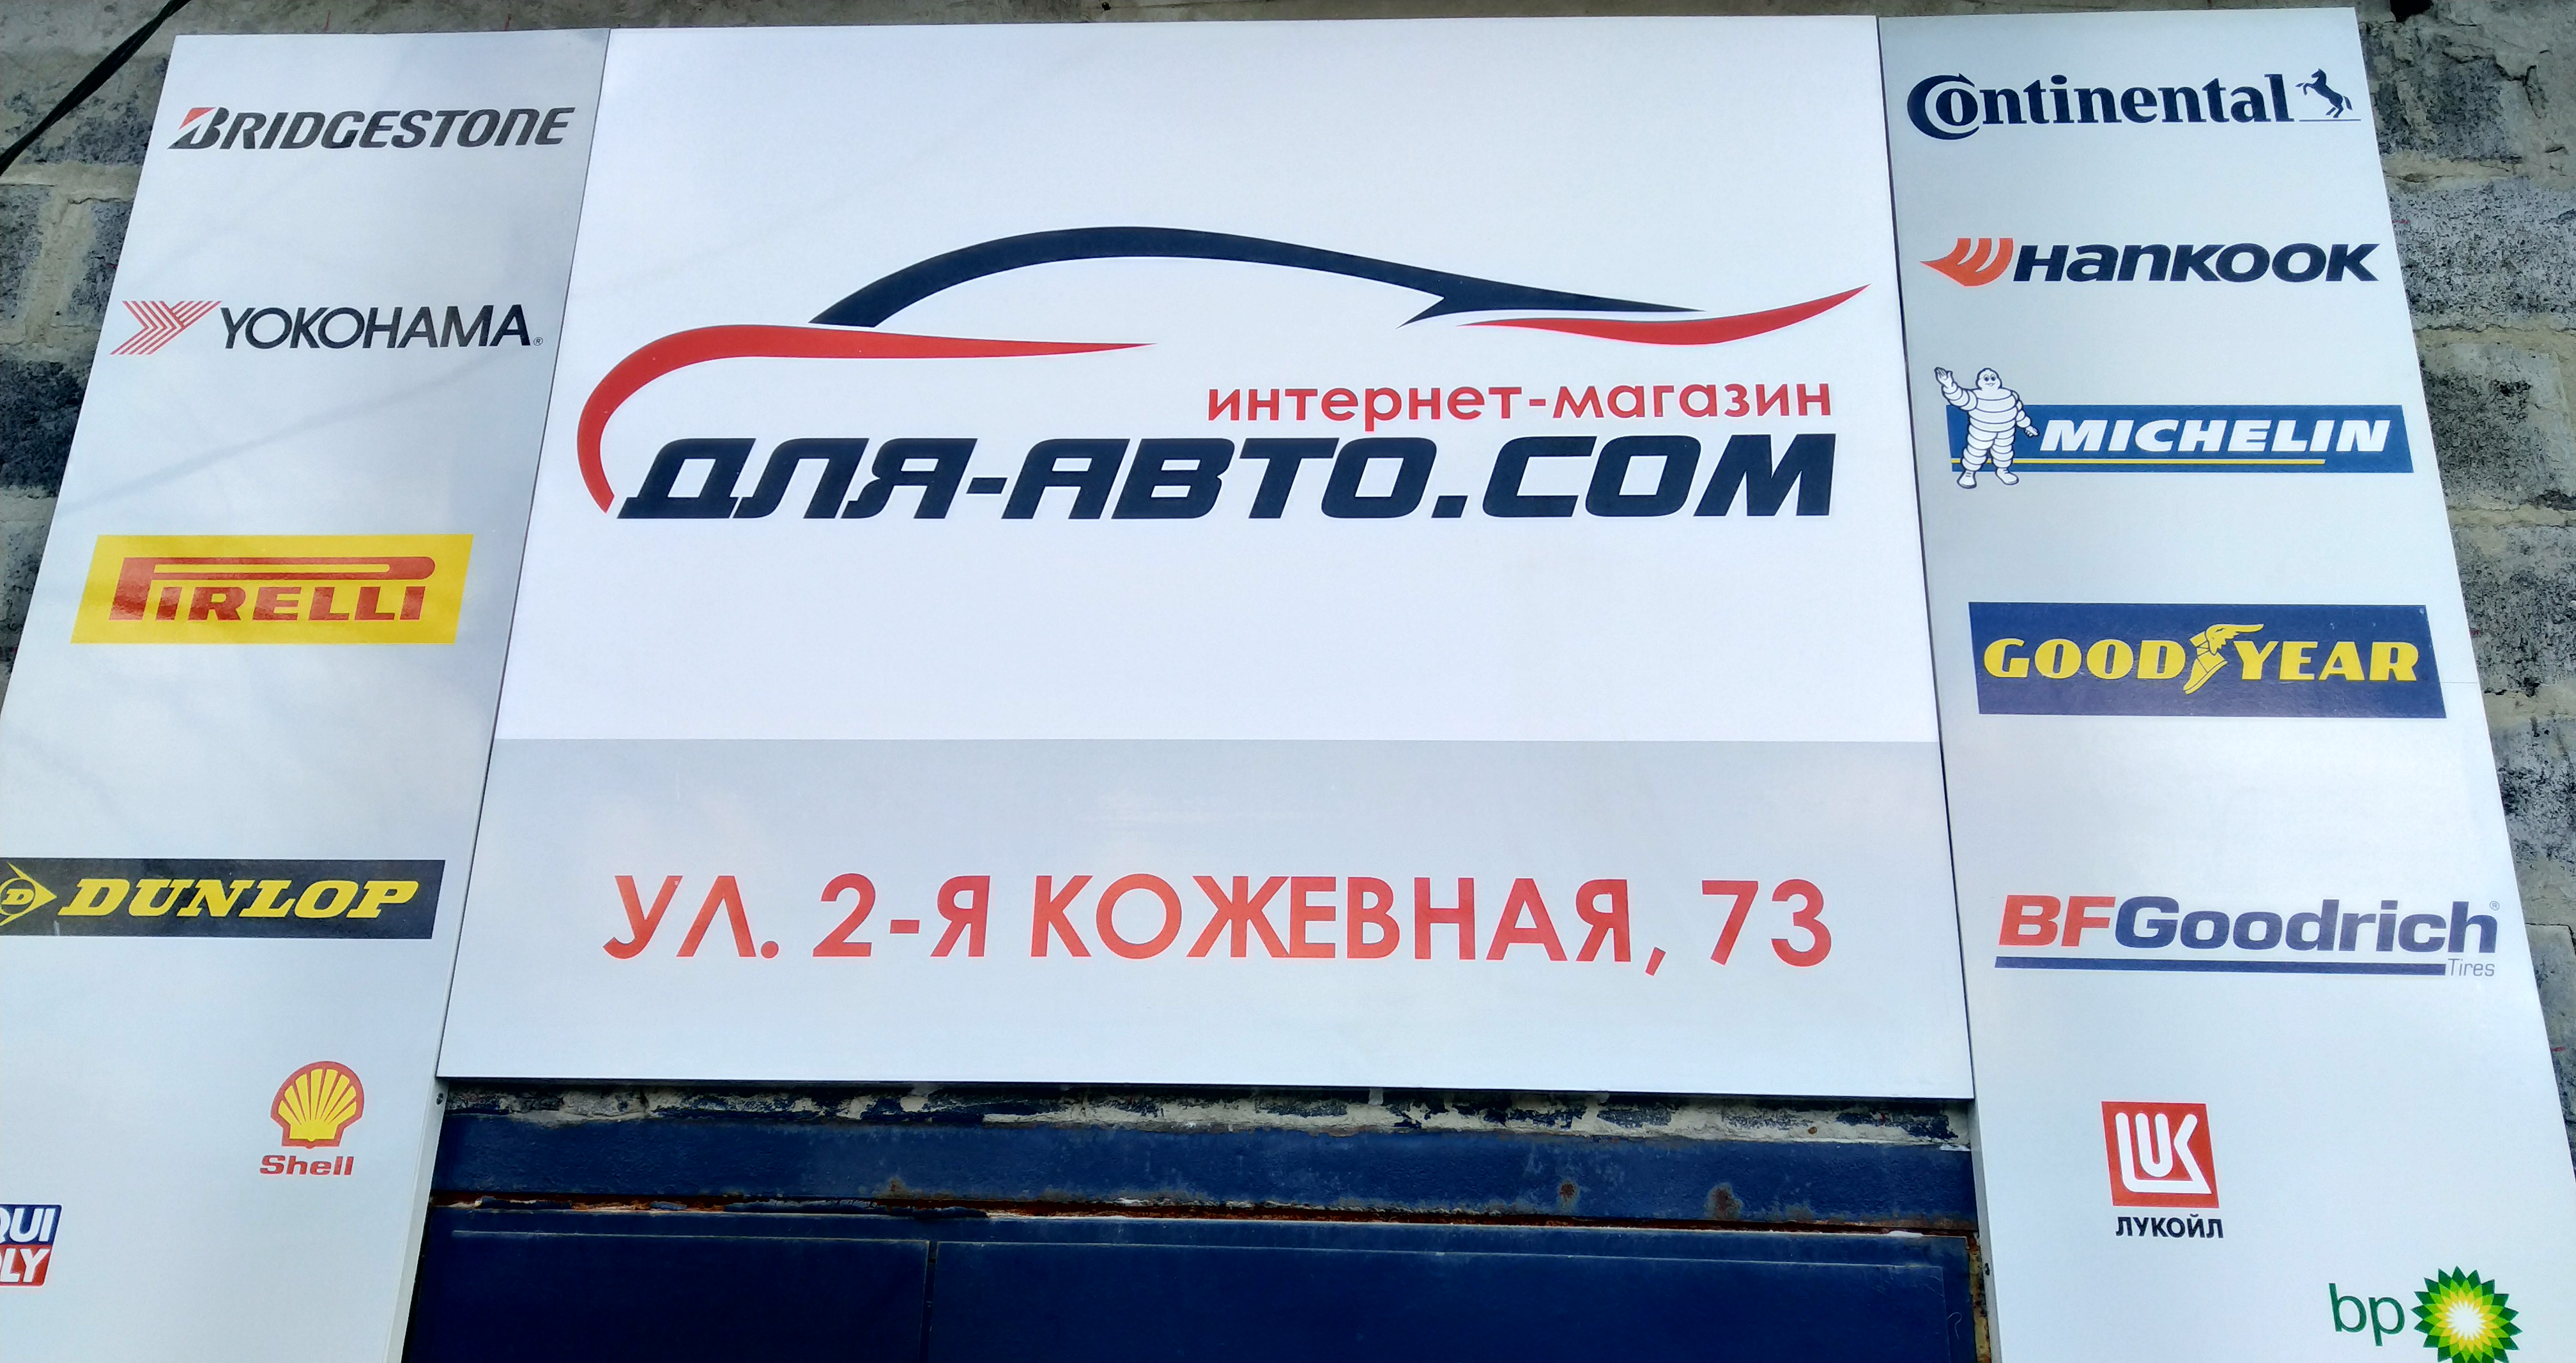 Купить шины, диски, масла, аккумуляторы в Луганске и ЛНР